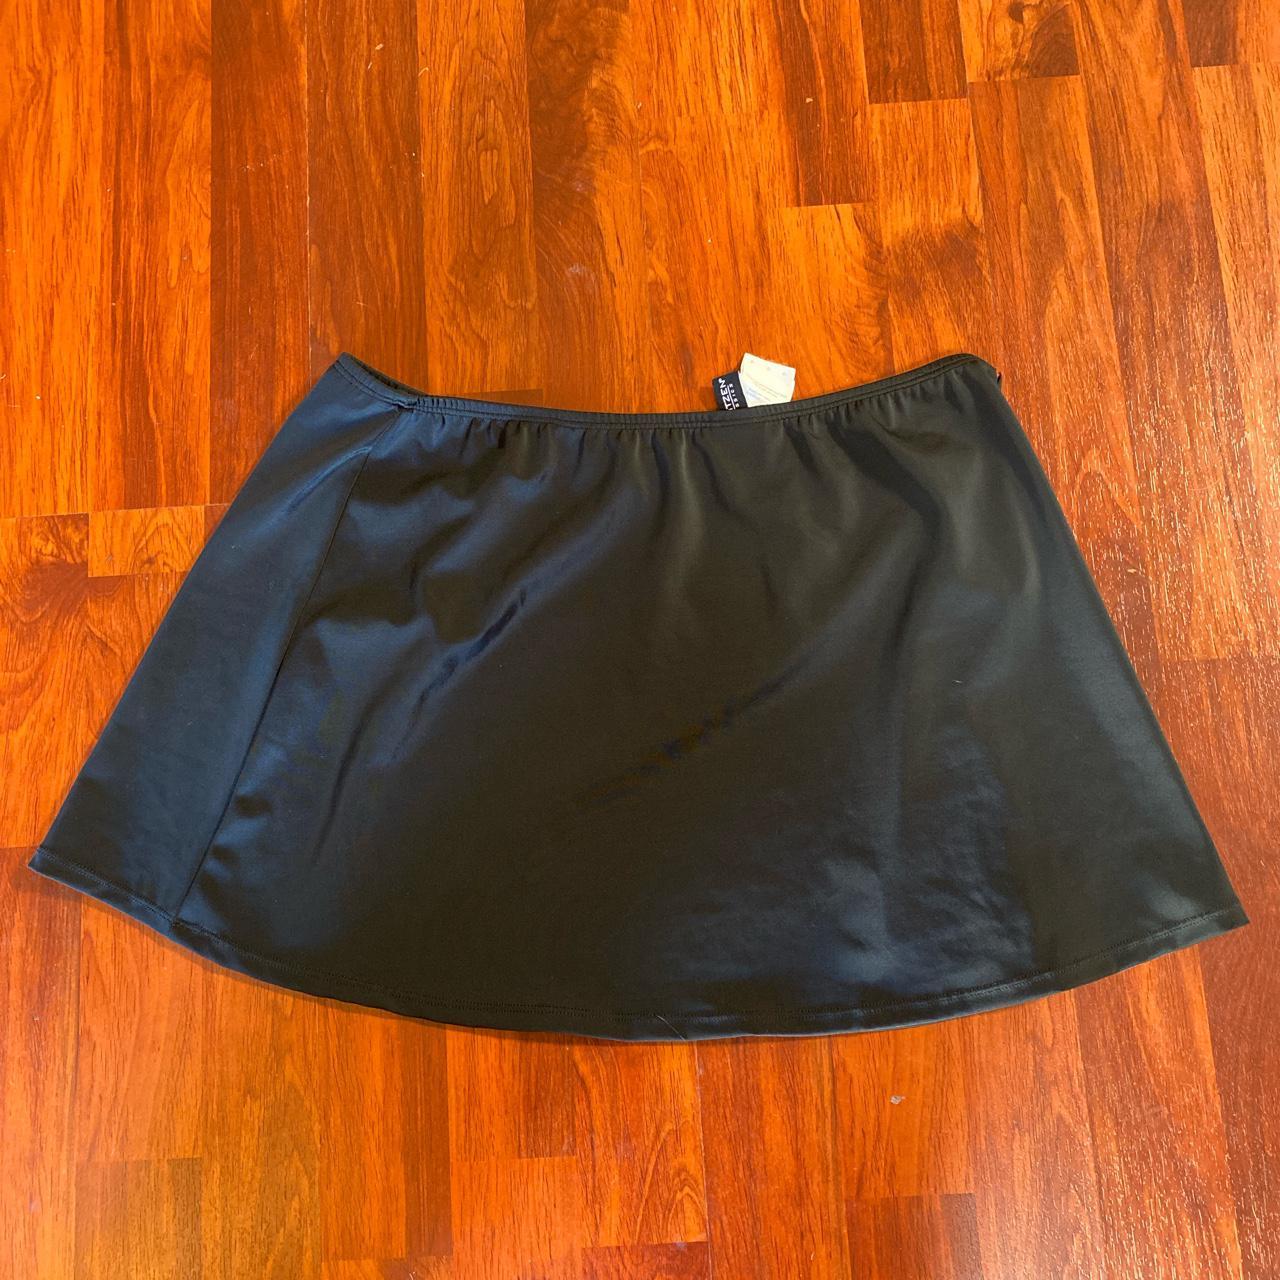 Women's Black Skirt | Depop